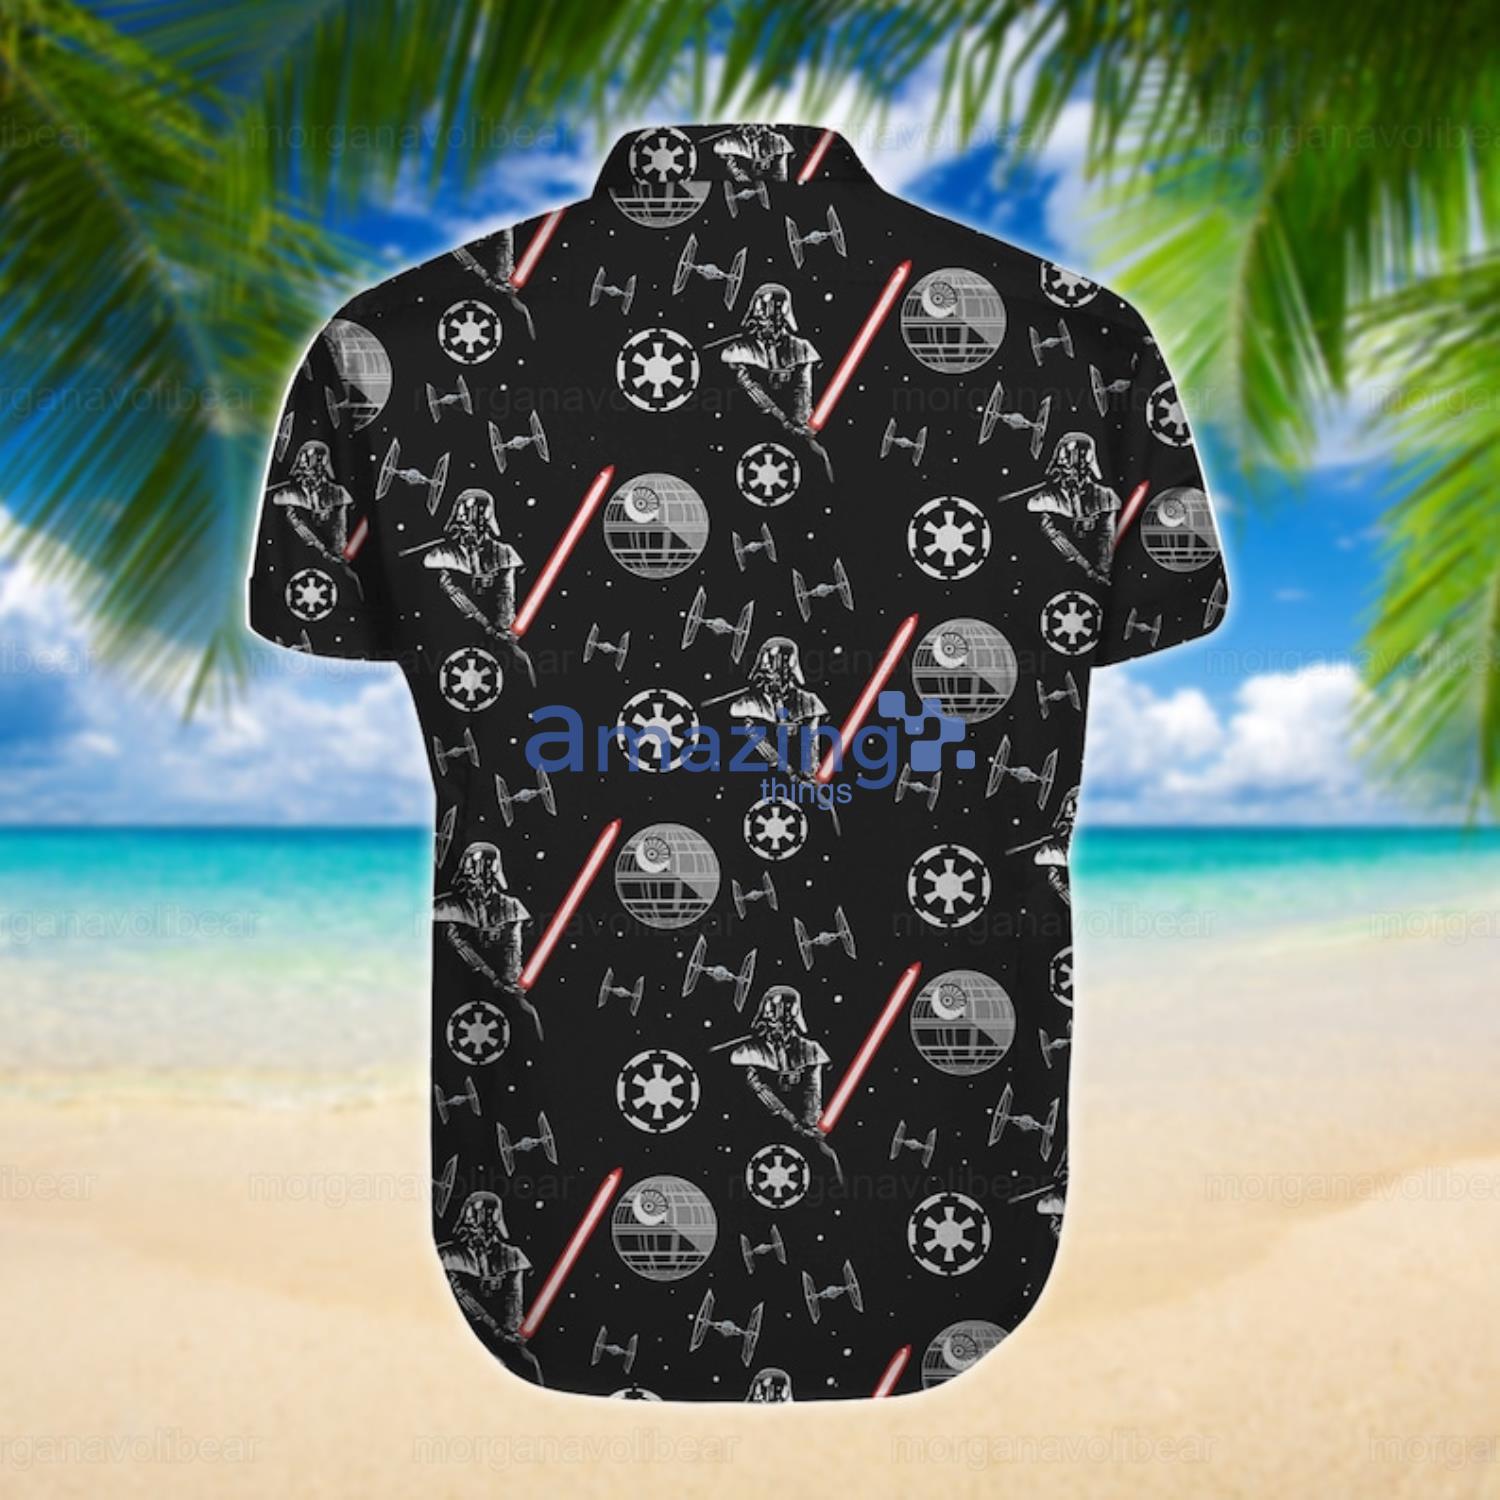 Space Ship Star Wars Hawaiian Shirt For Star Wars Lover